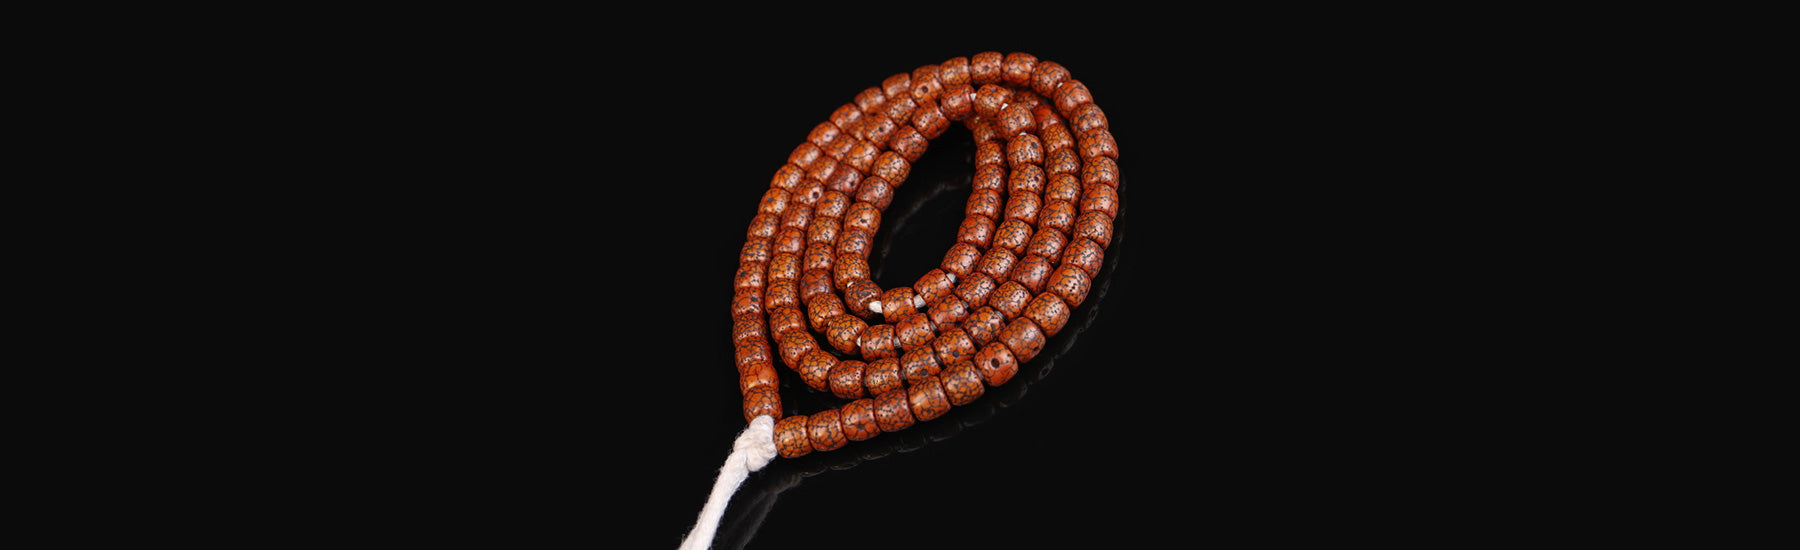 Tibetan Prayer Beads - mantrapiece.com